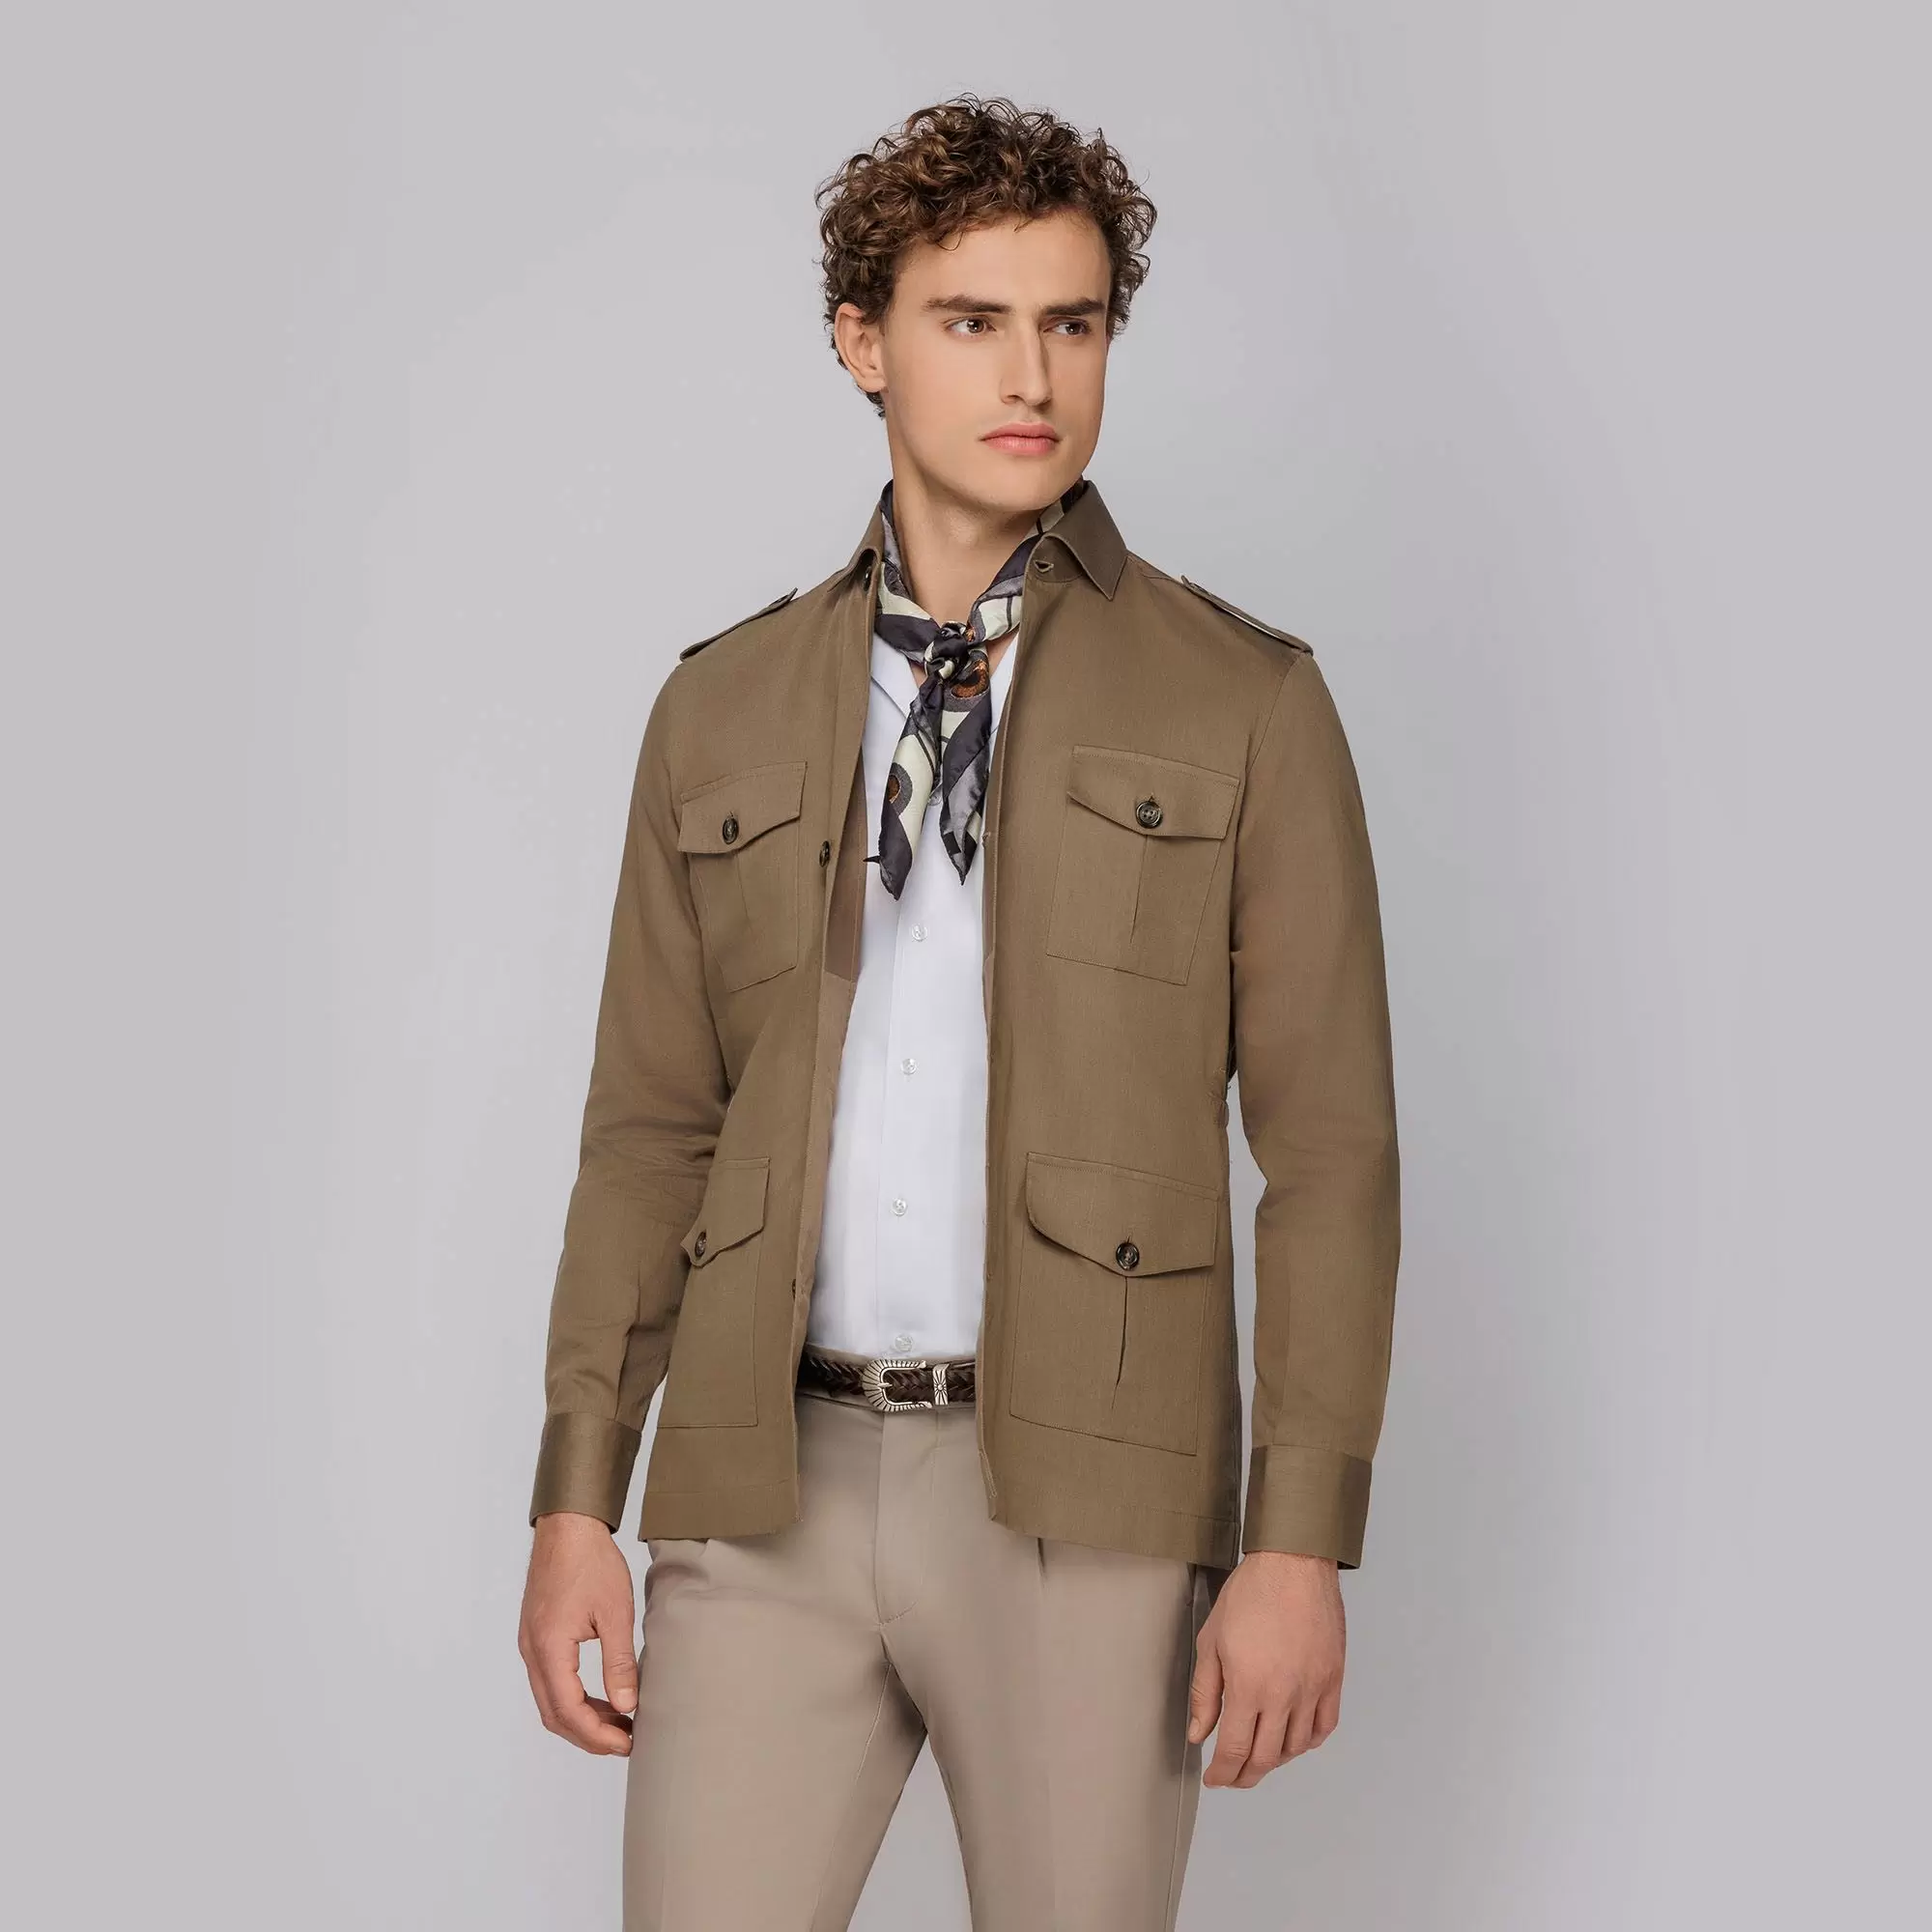 Safari Jacket: La chaqueta de corte sahariano  Мужская повседневная мода,  Мужская зимняя мода, Летние мужские наряды